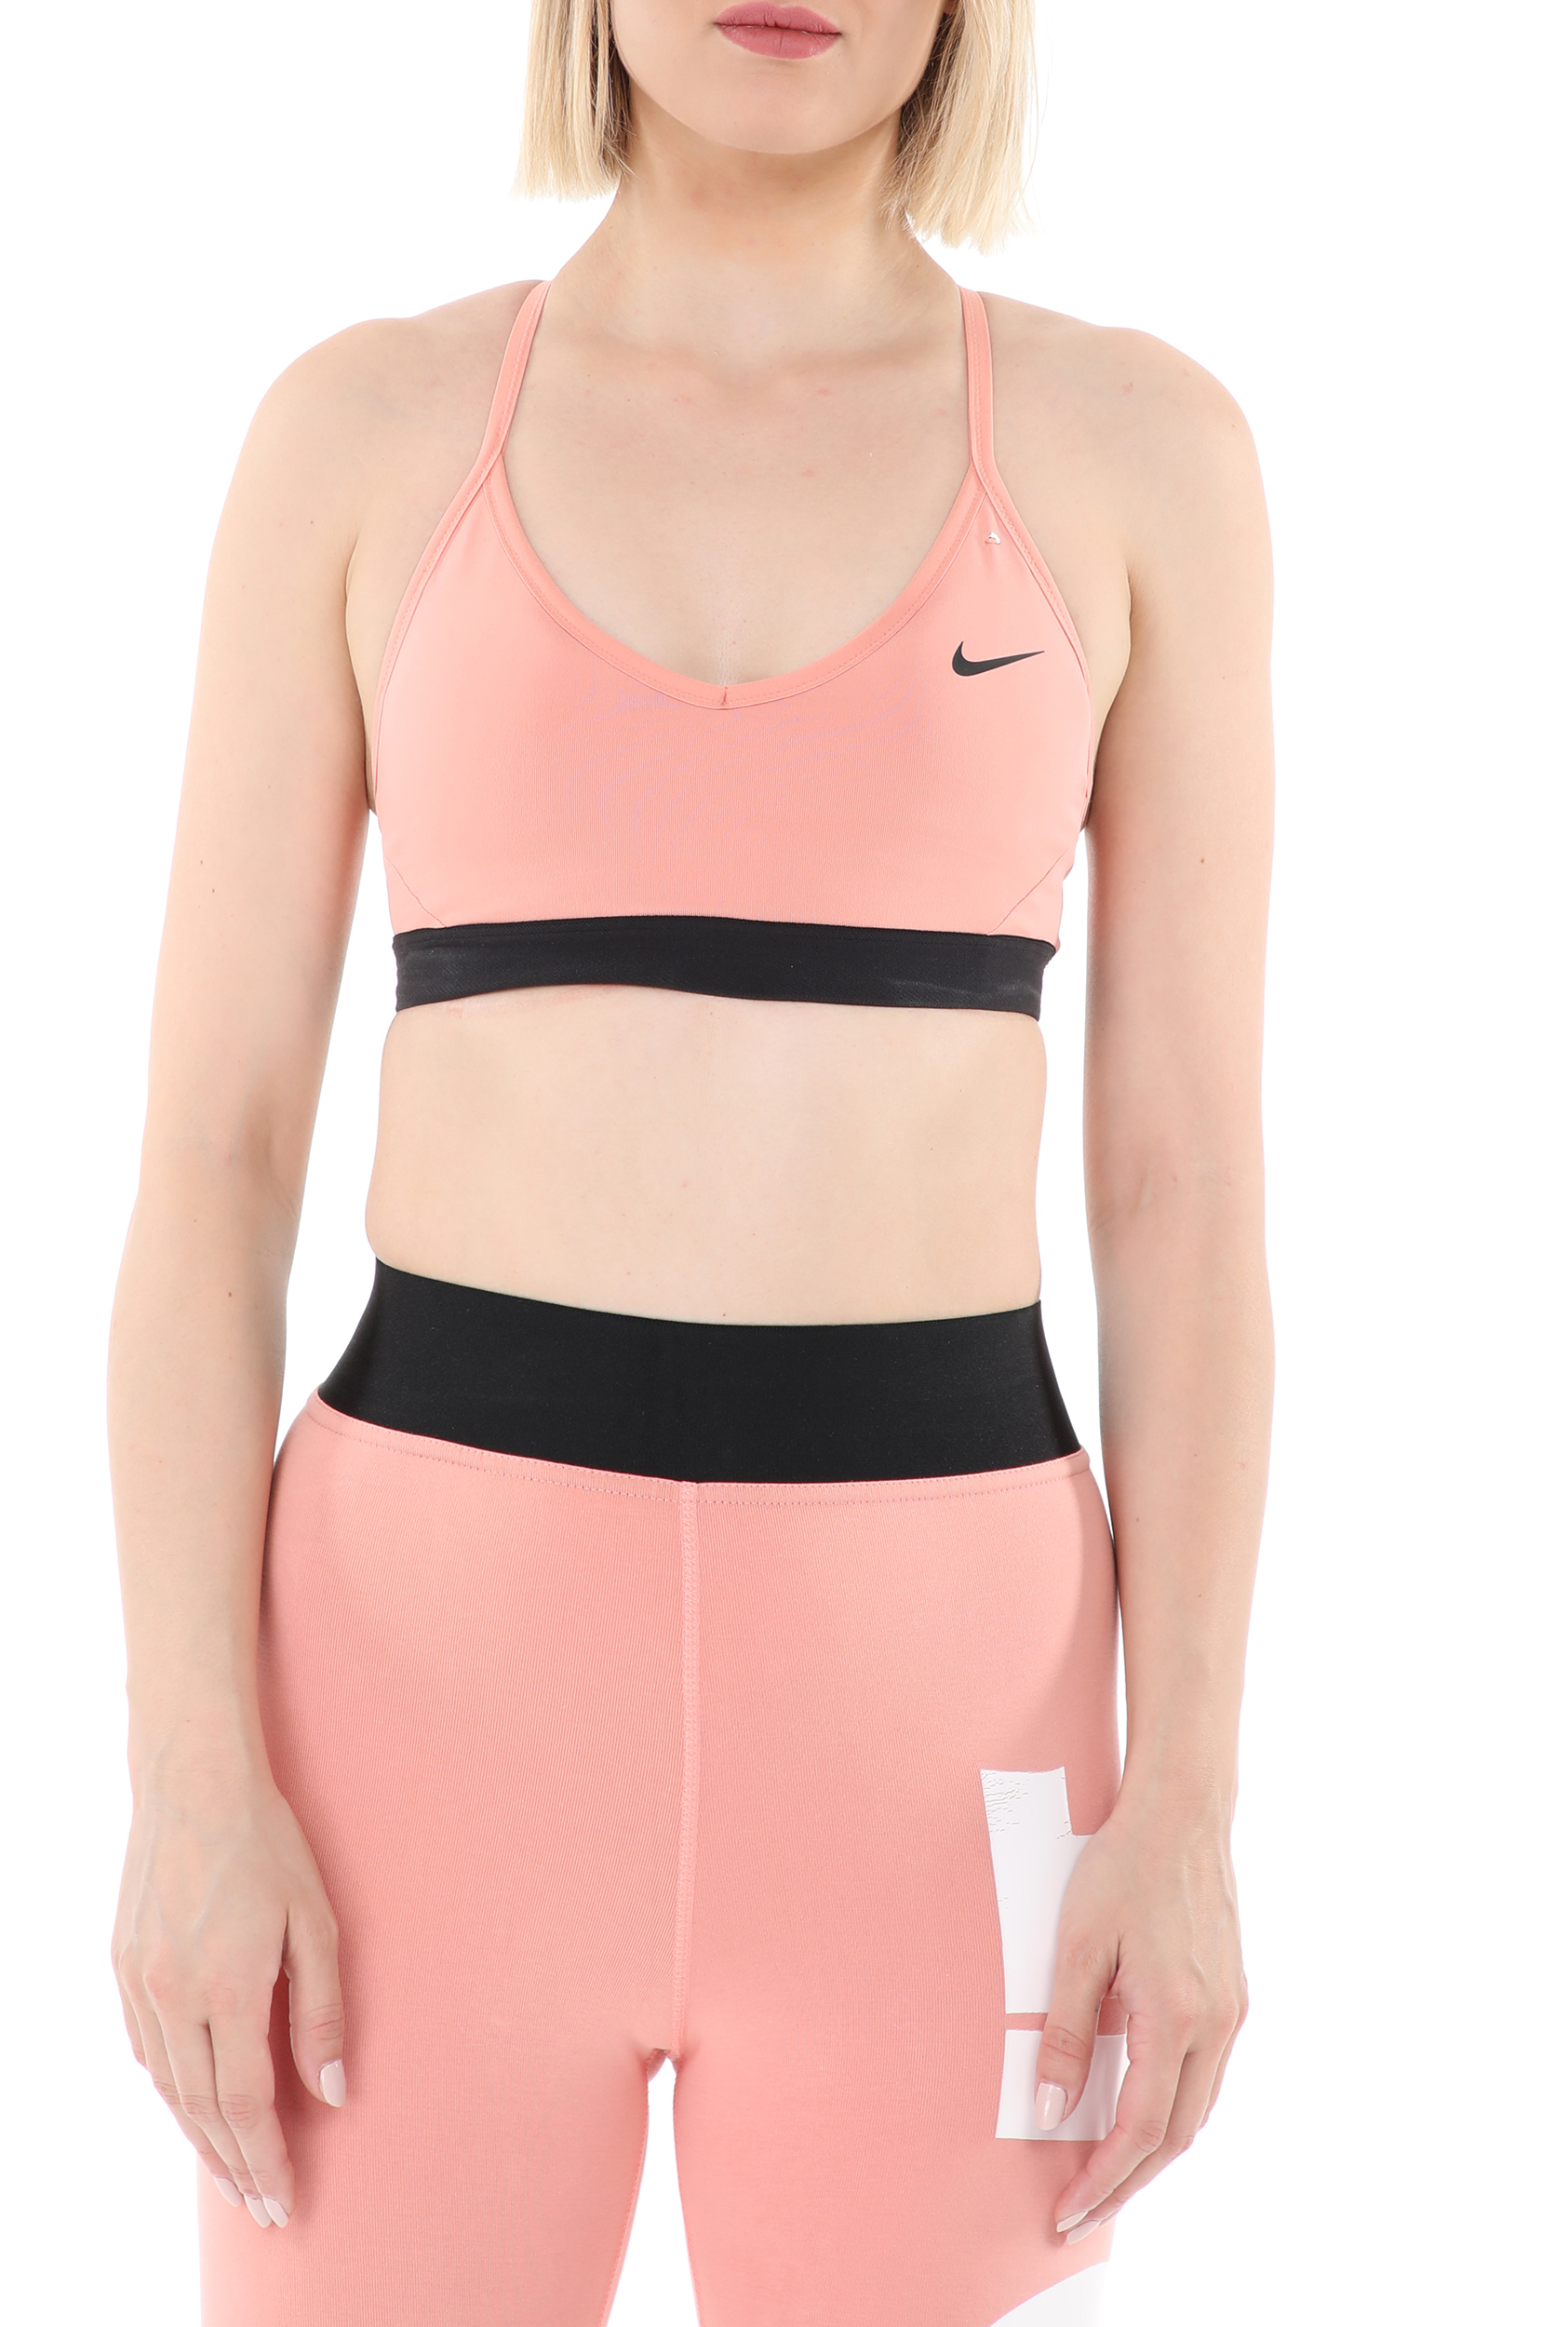 Γυναικεία/Ρούχα/Αθλητικά/Μπουστάκια NIKE - Γυναικείο αθλητικό μπουστάκι NIKE INDY BRA ροζ